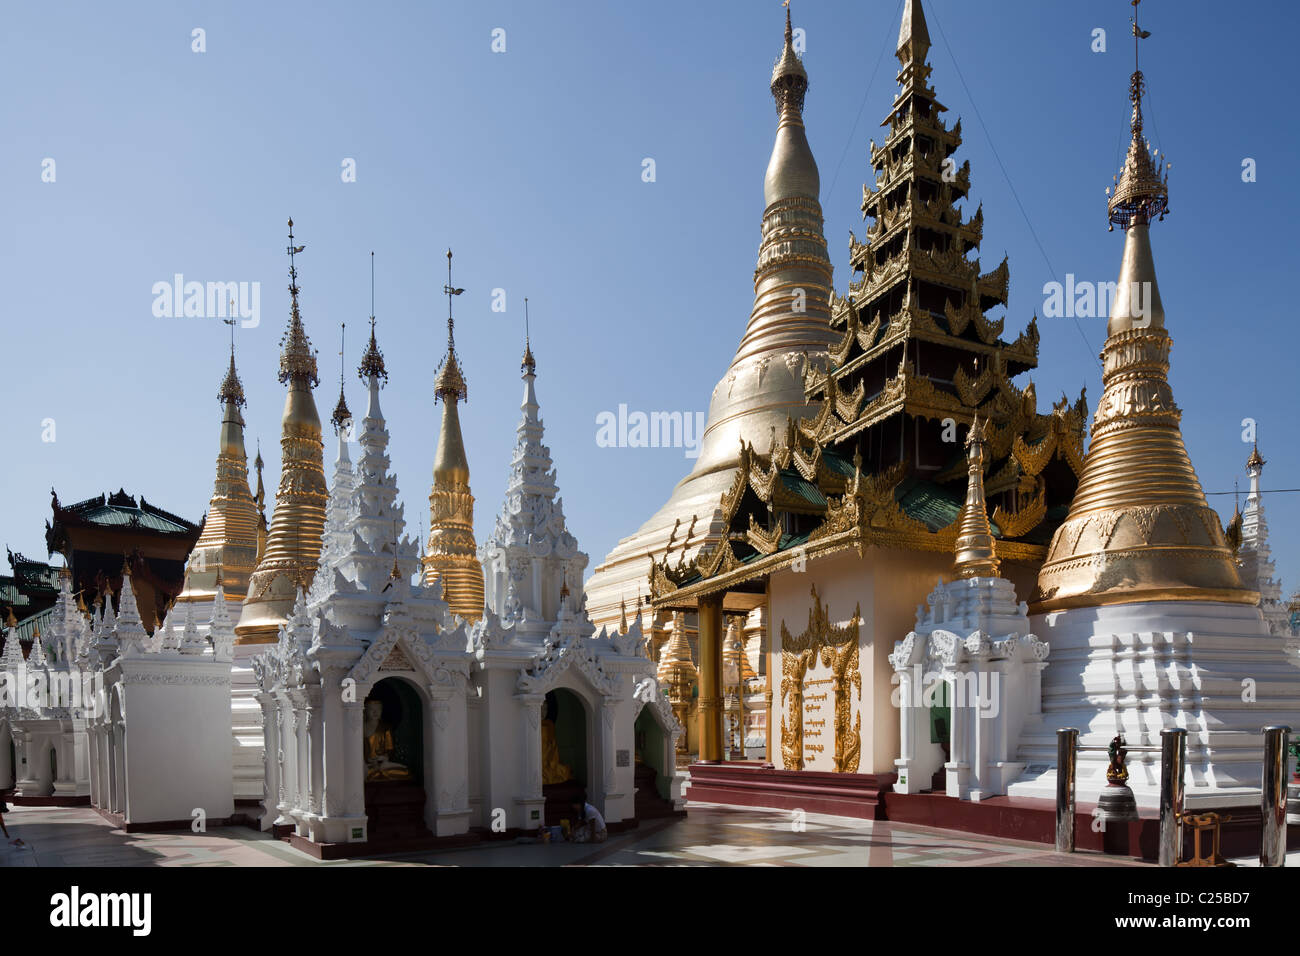 De l'intérieur le plus grand temple bouddhiste de la pagode Shwedagon, Rangoon, Birmanie. Banque D'Images